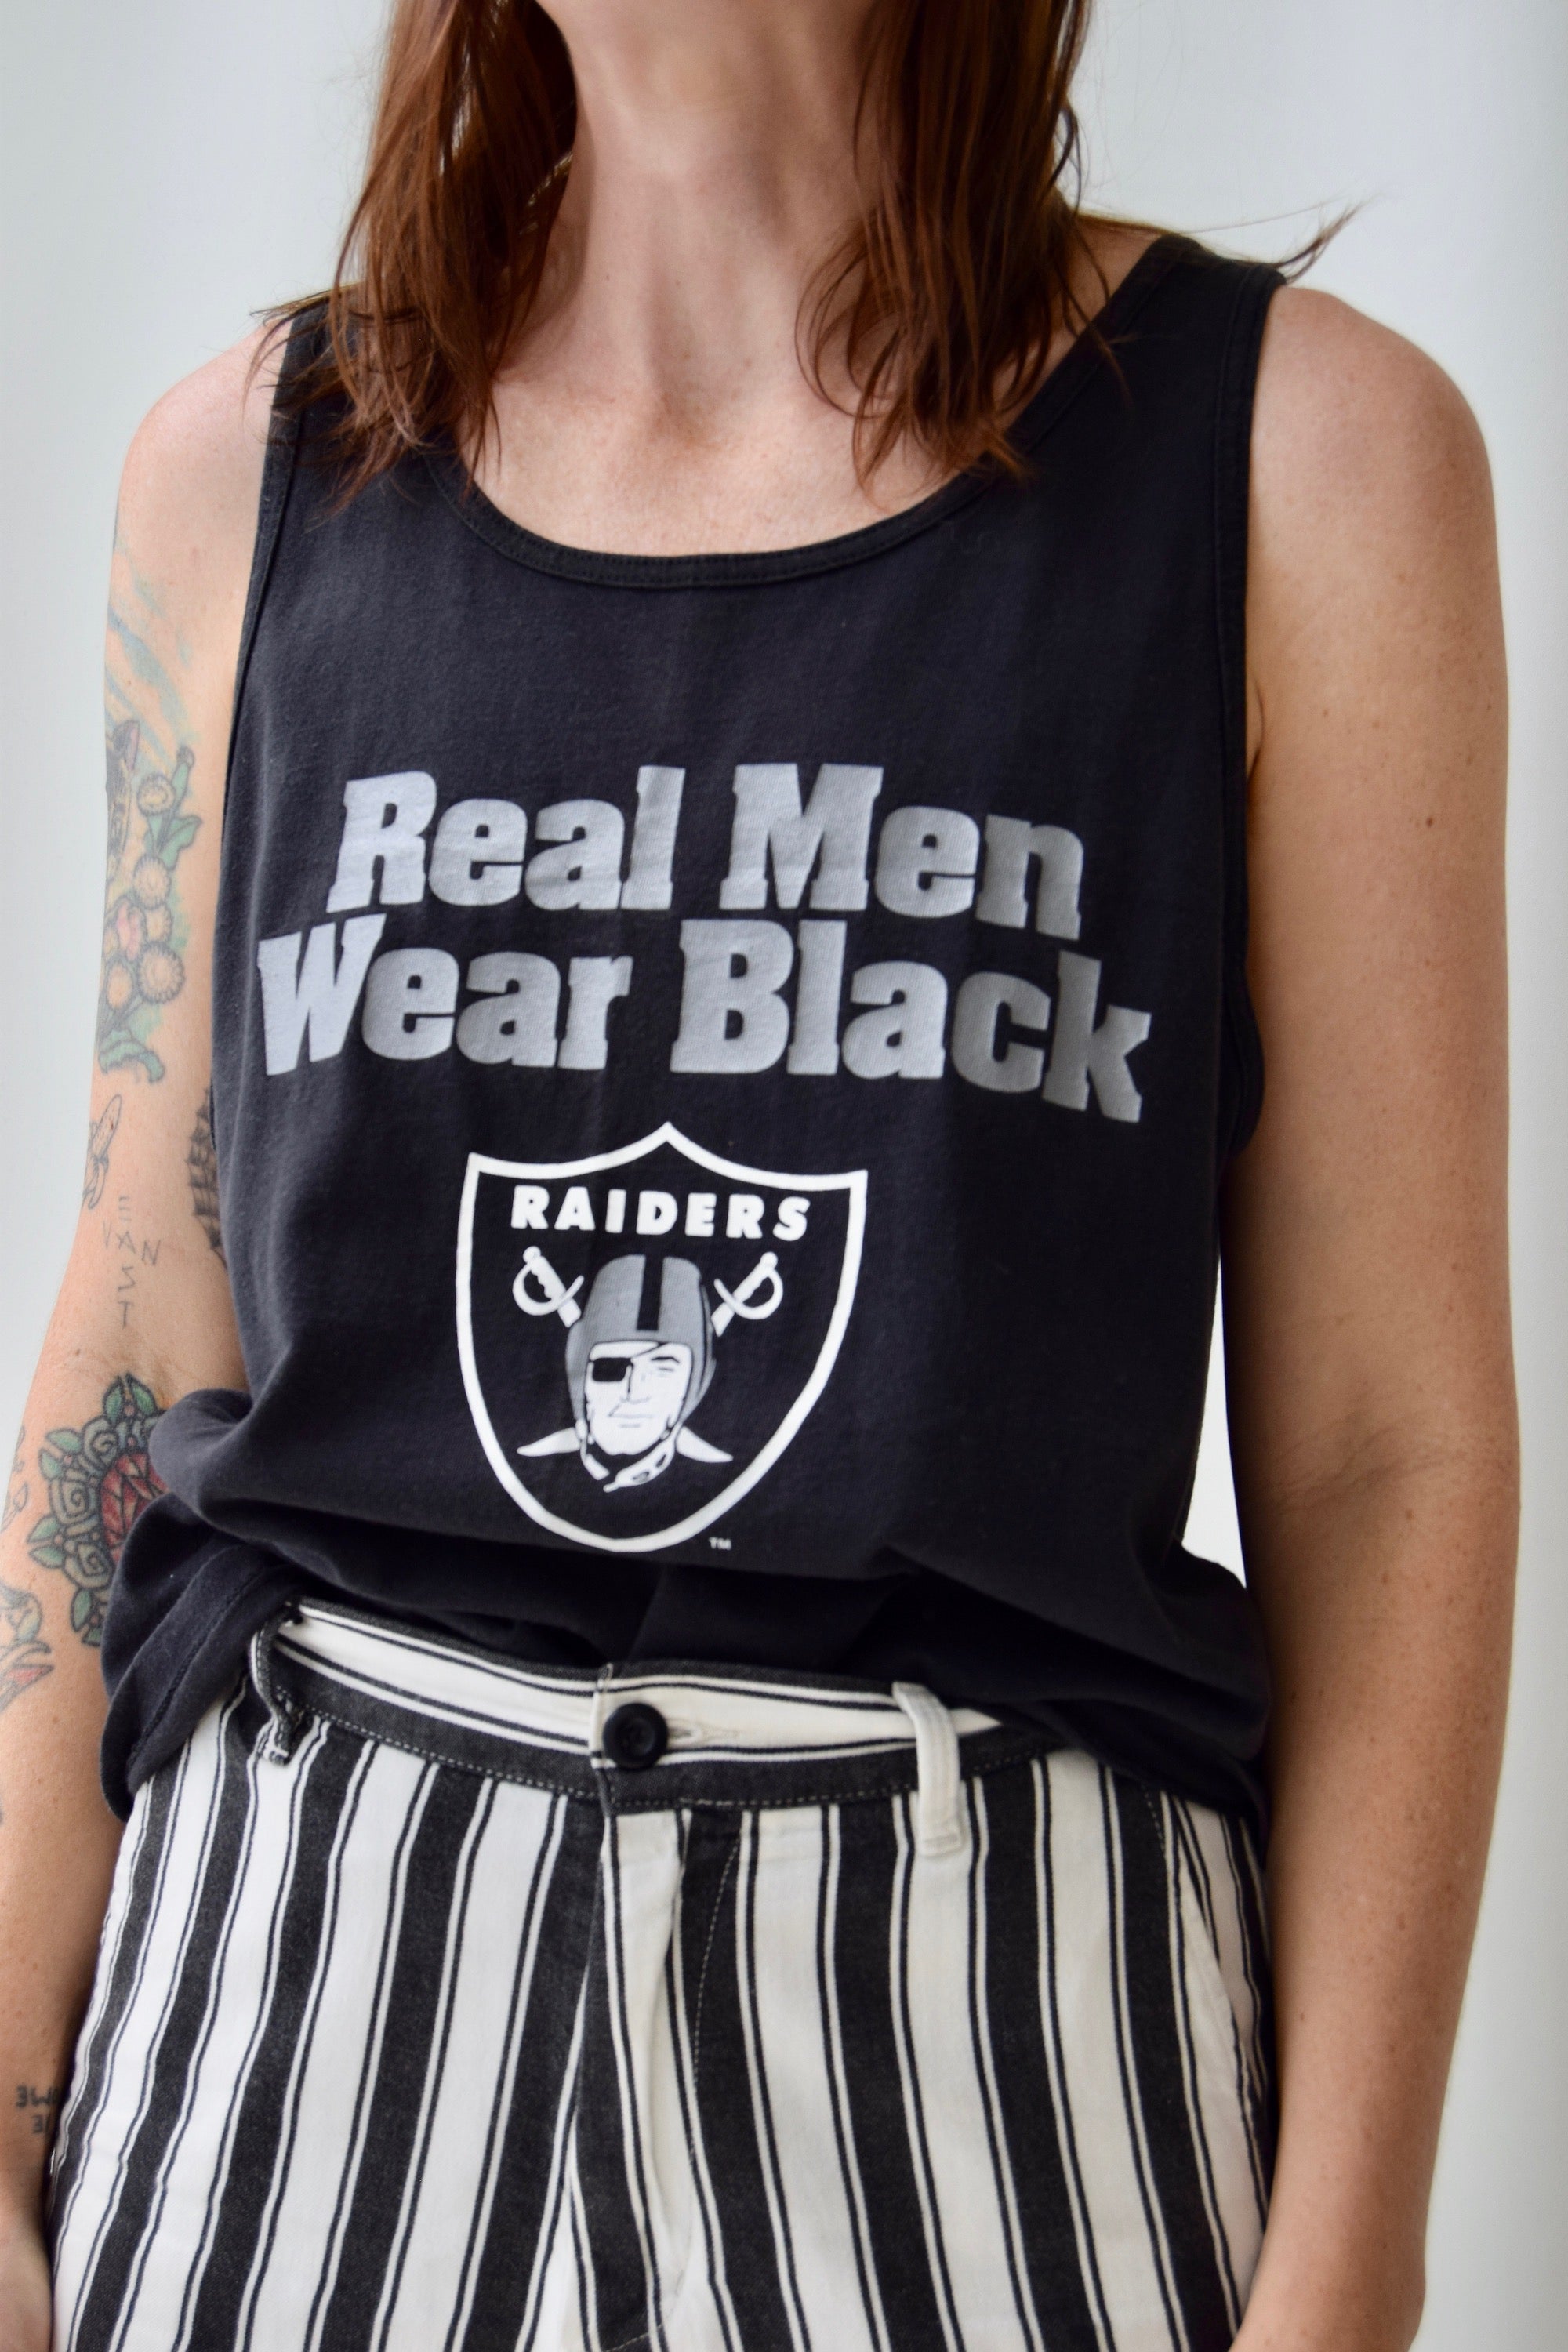 Vintage Raiders "Real Men Wear Black" Tank